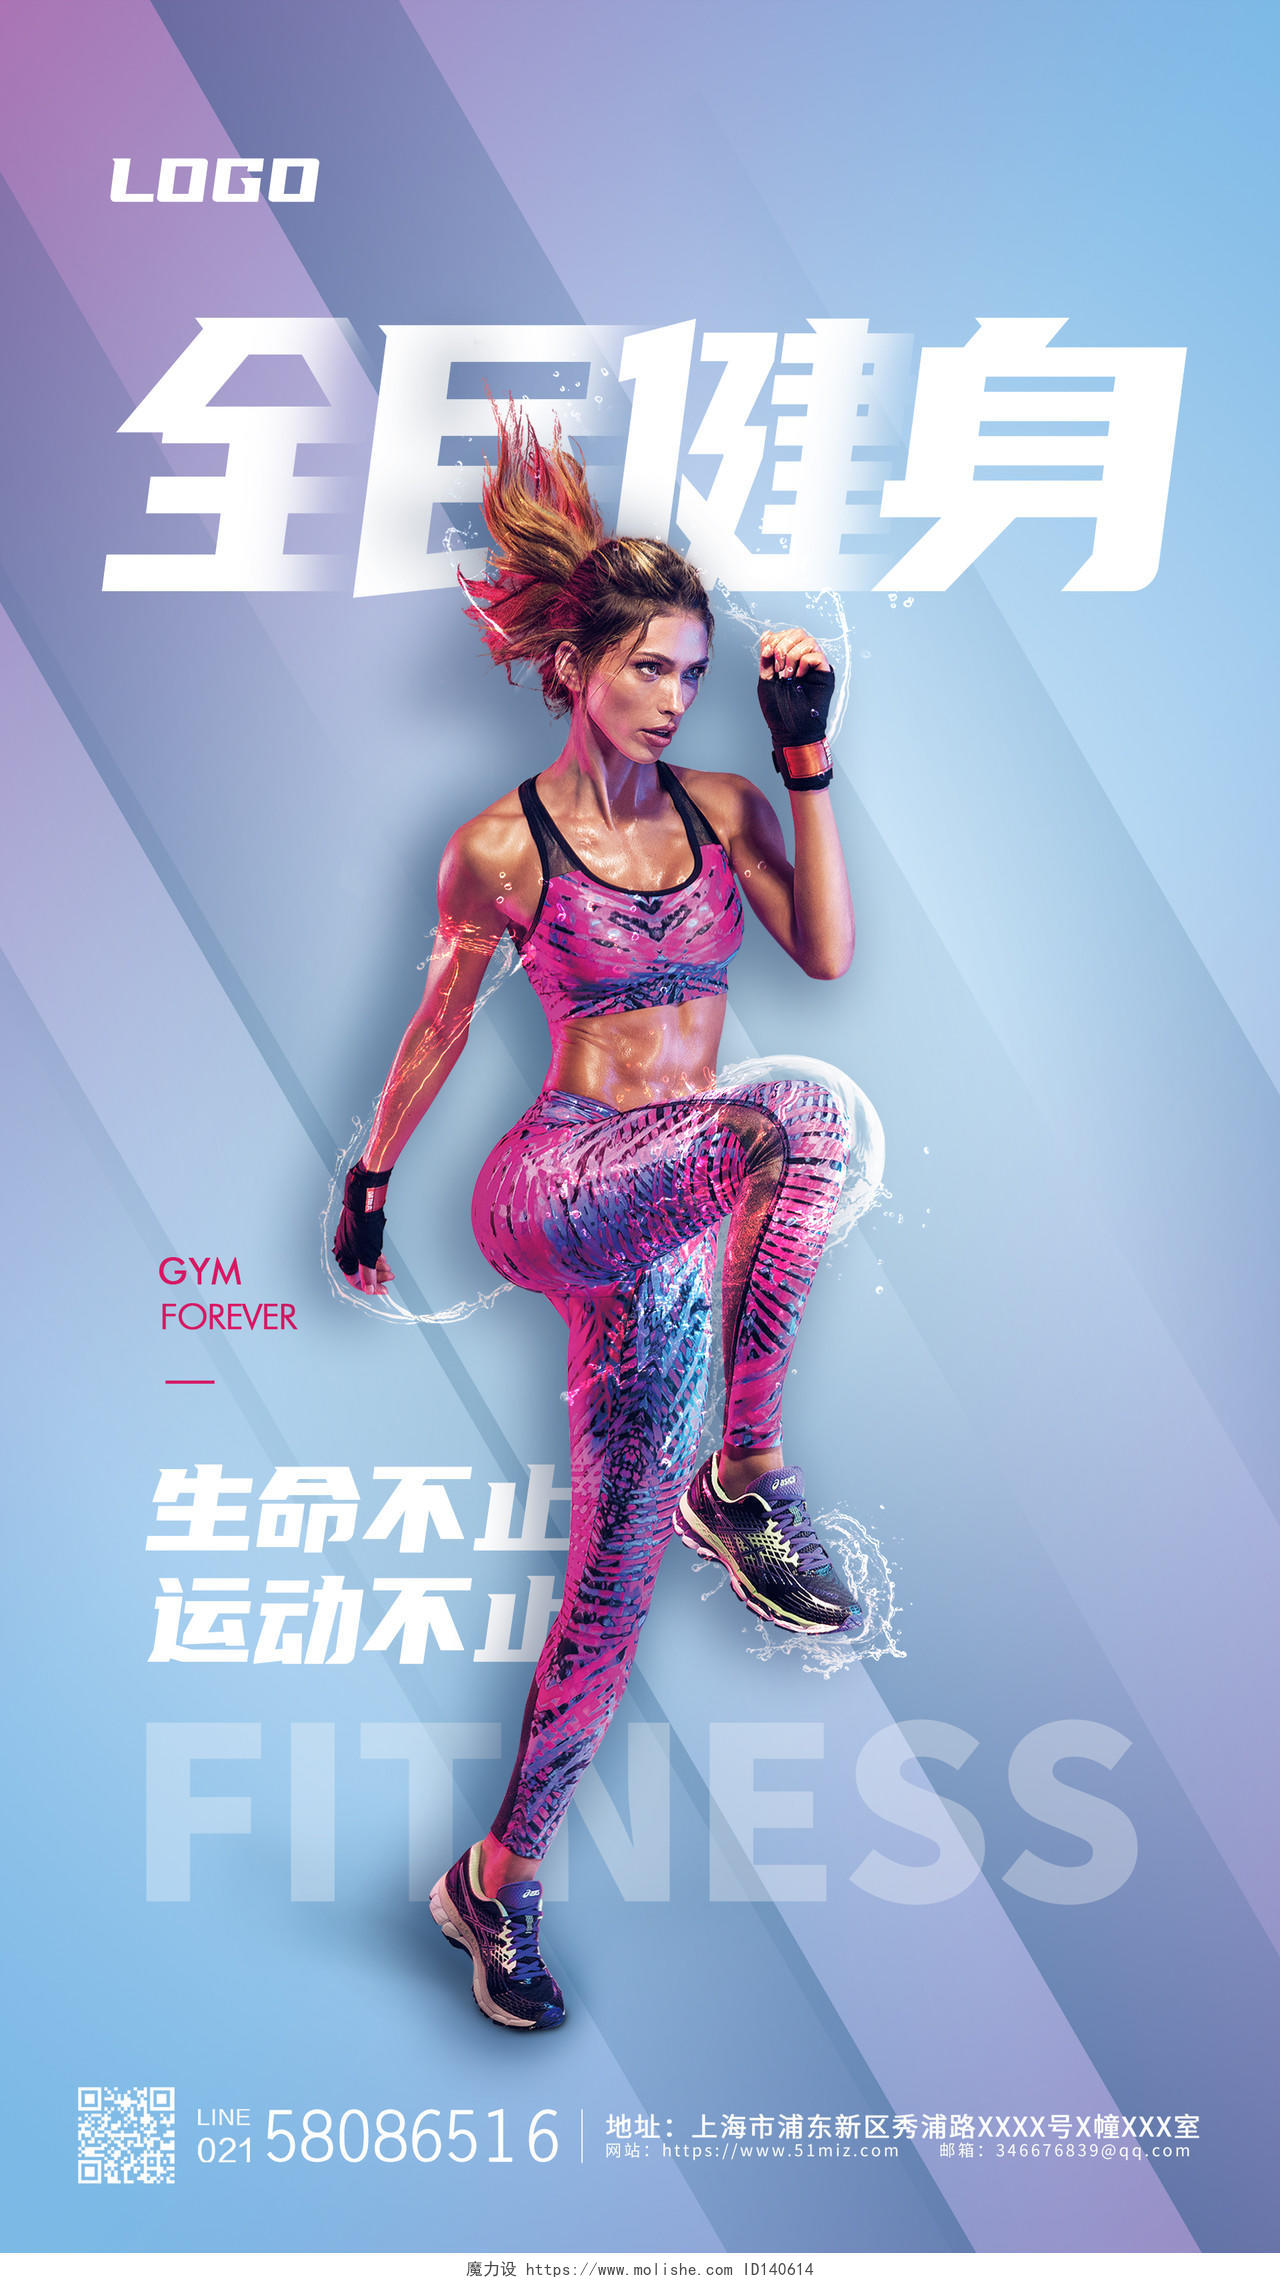 蓝色创意简约风格健身型动健身海报健身活动海报